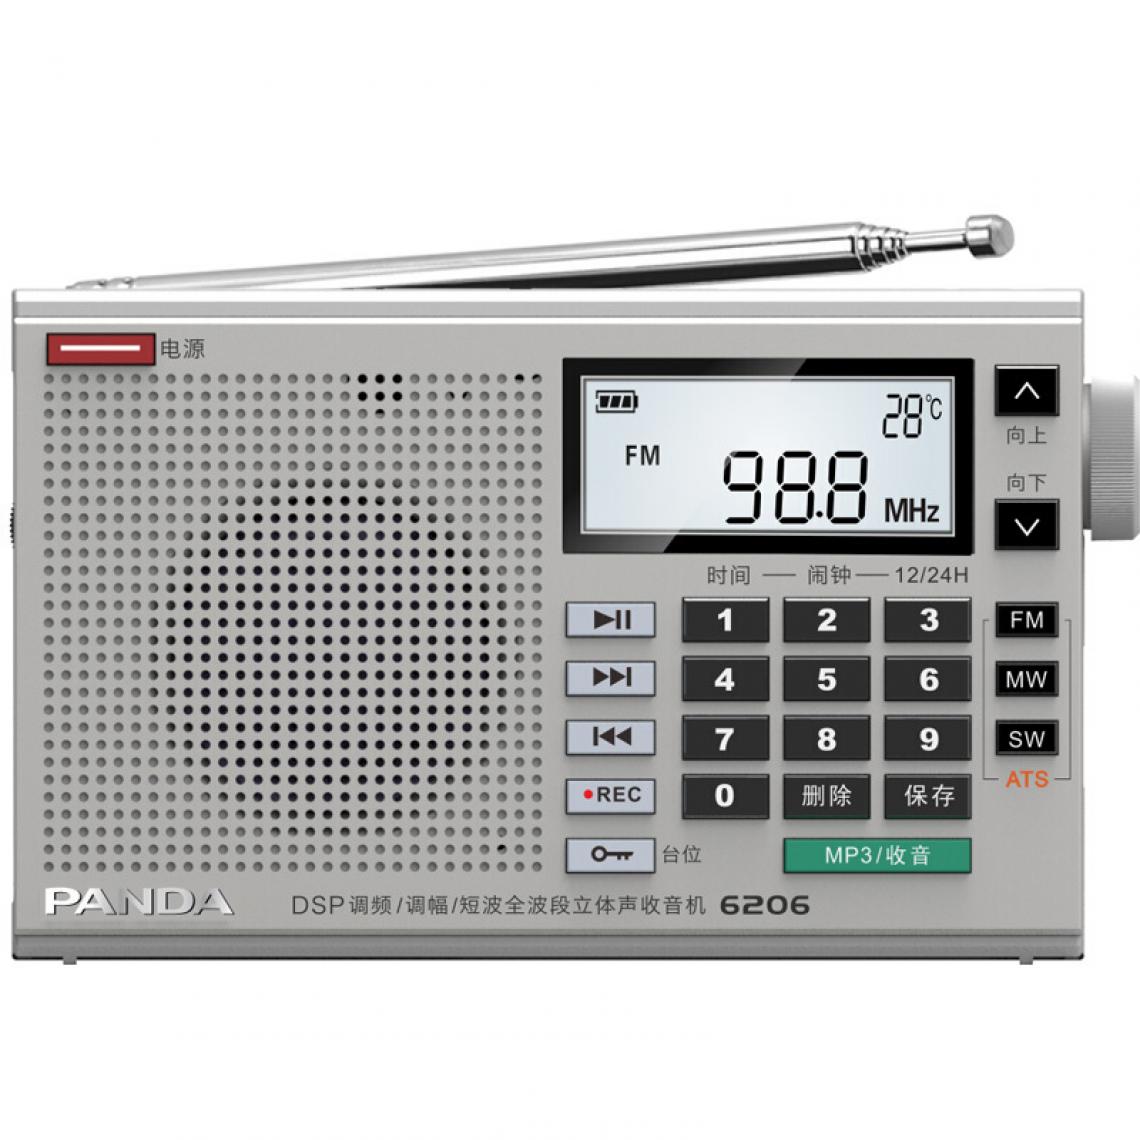 Universal - Nouvelle radio stéréo DSP Full Band Portable Player Home Radio FM Récepteur numérique Radio Mini Haut-parleur Support FM AM SW MW | Radio - Radio